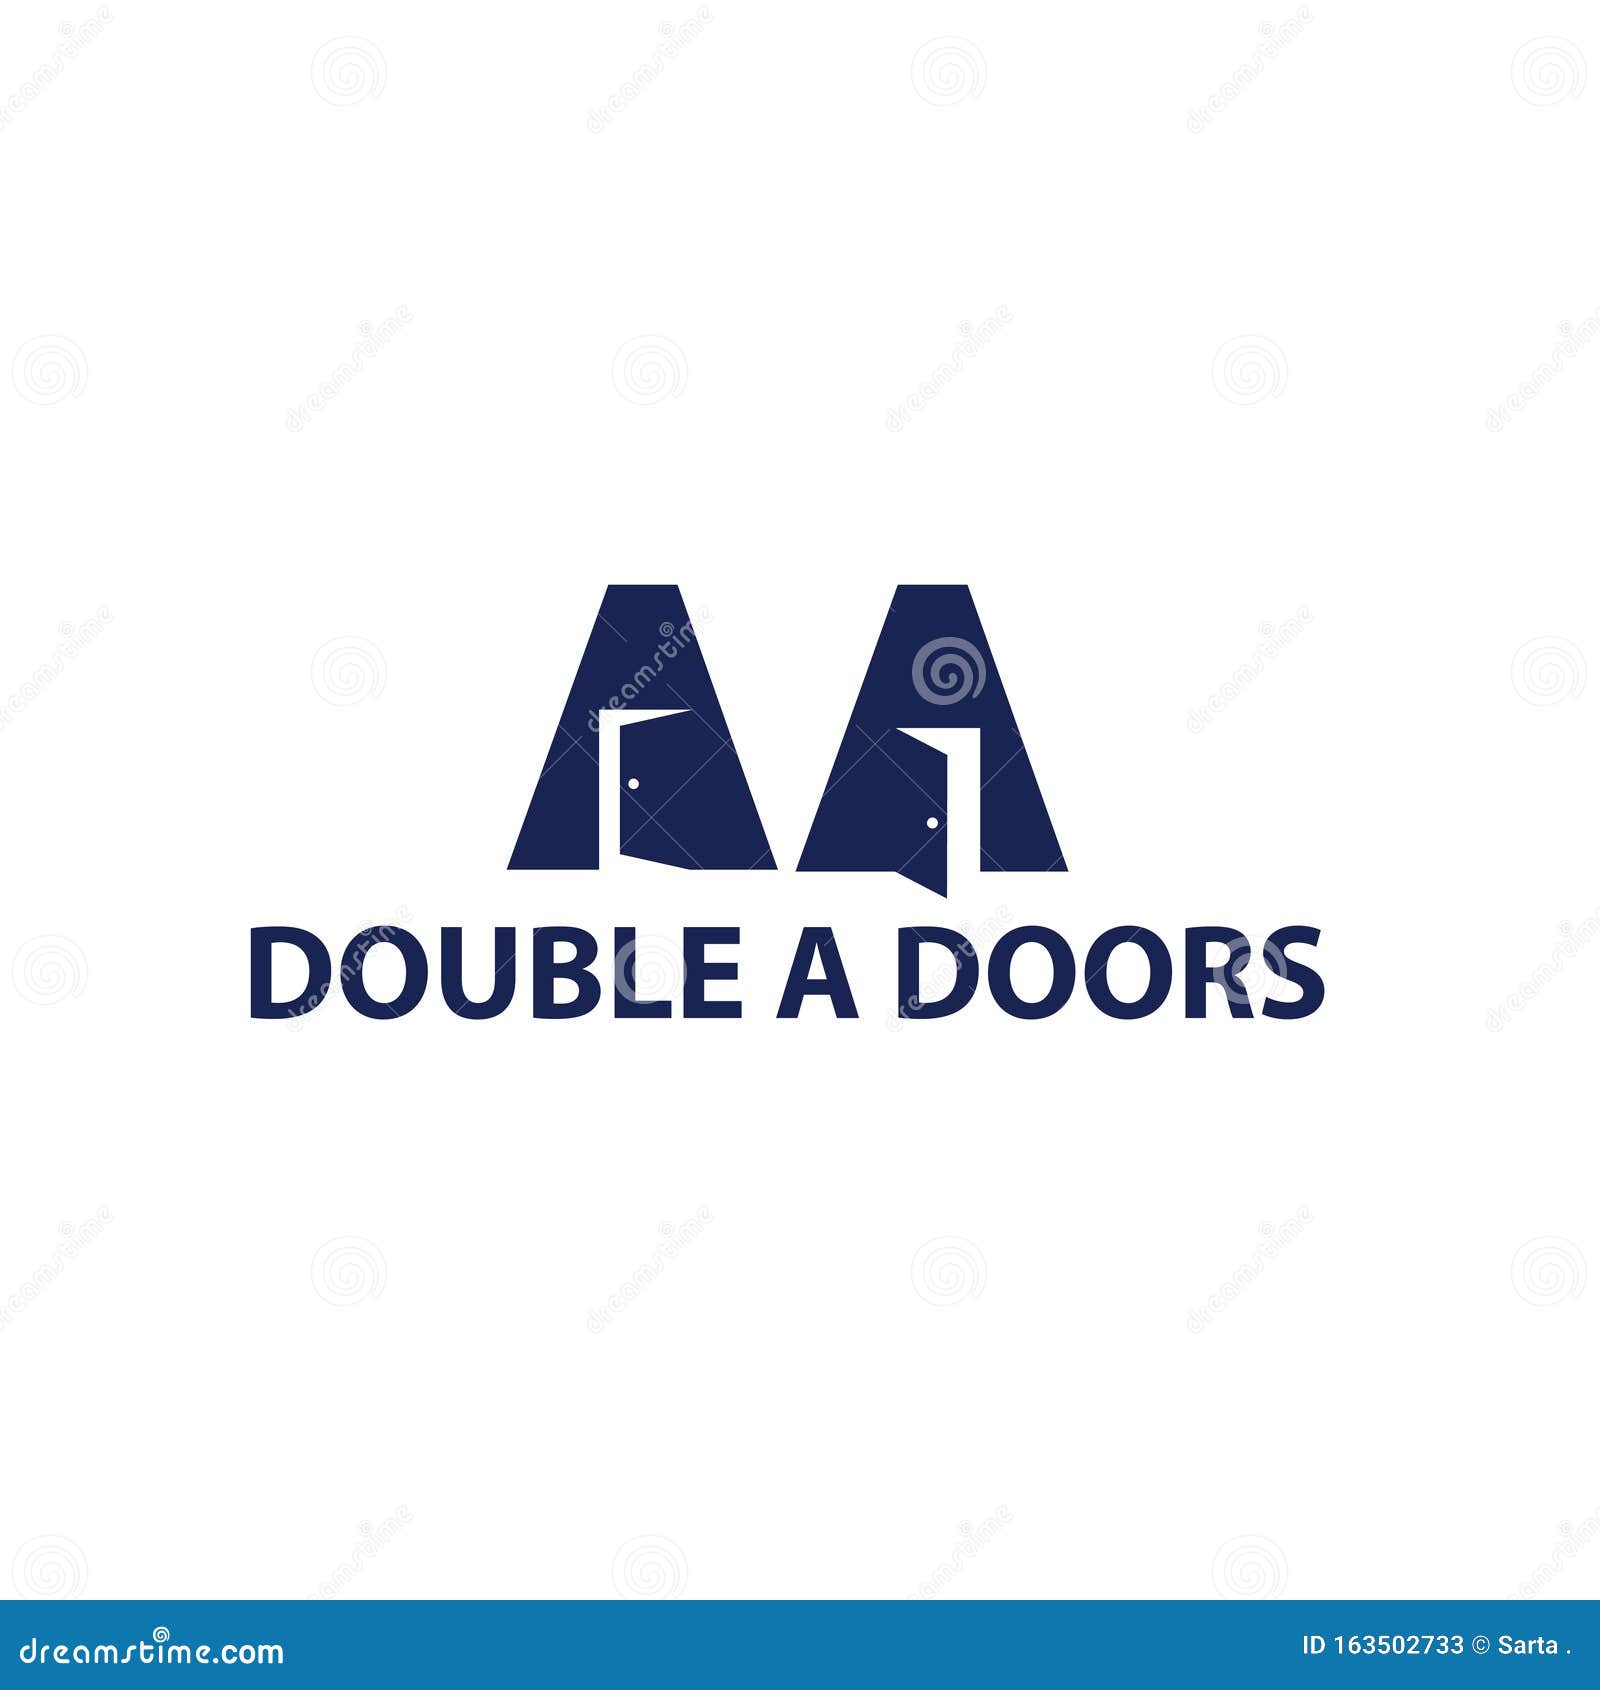  Double  A Doors  Logo  Company Stock Illustration 